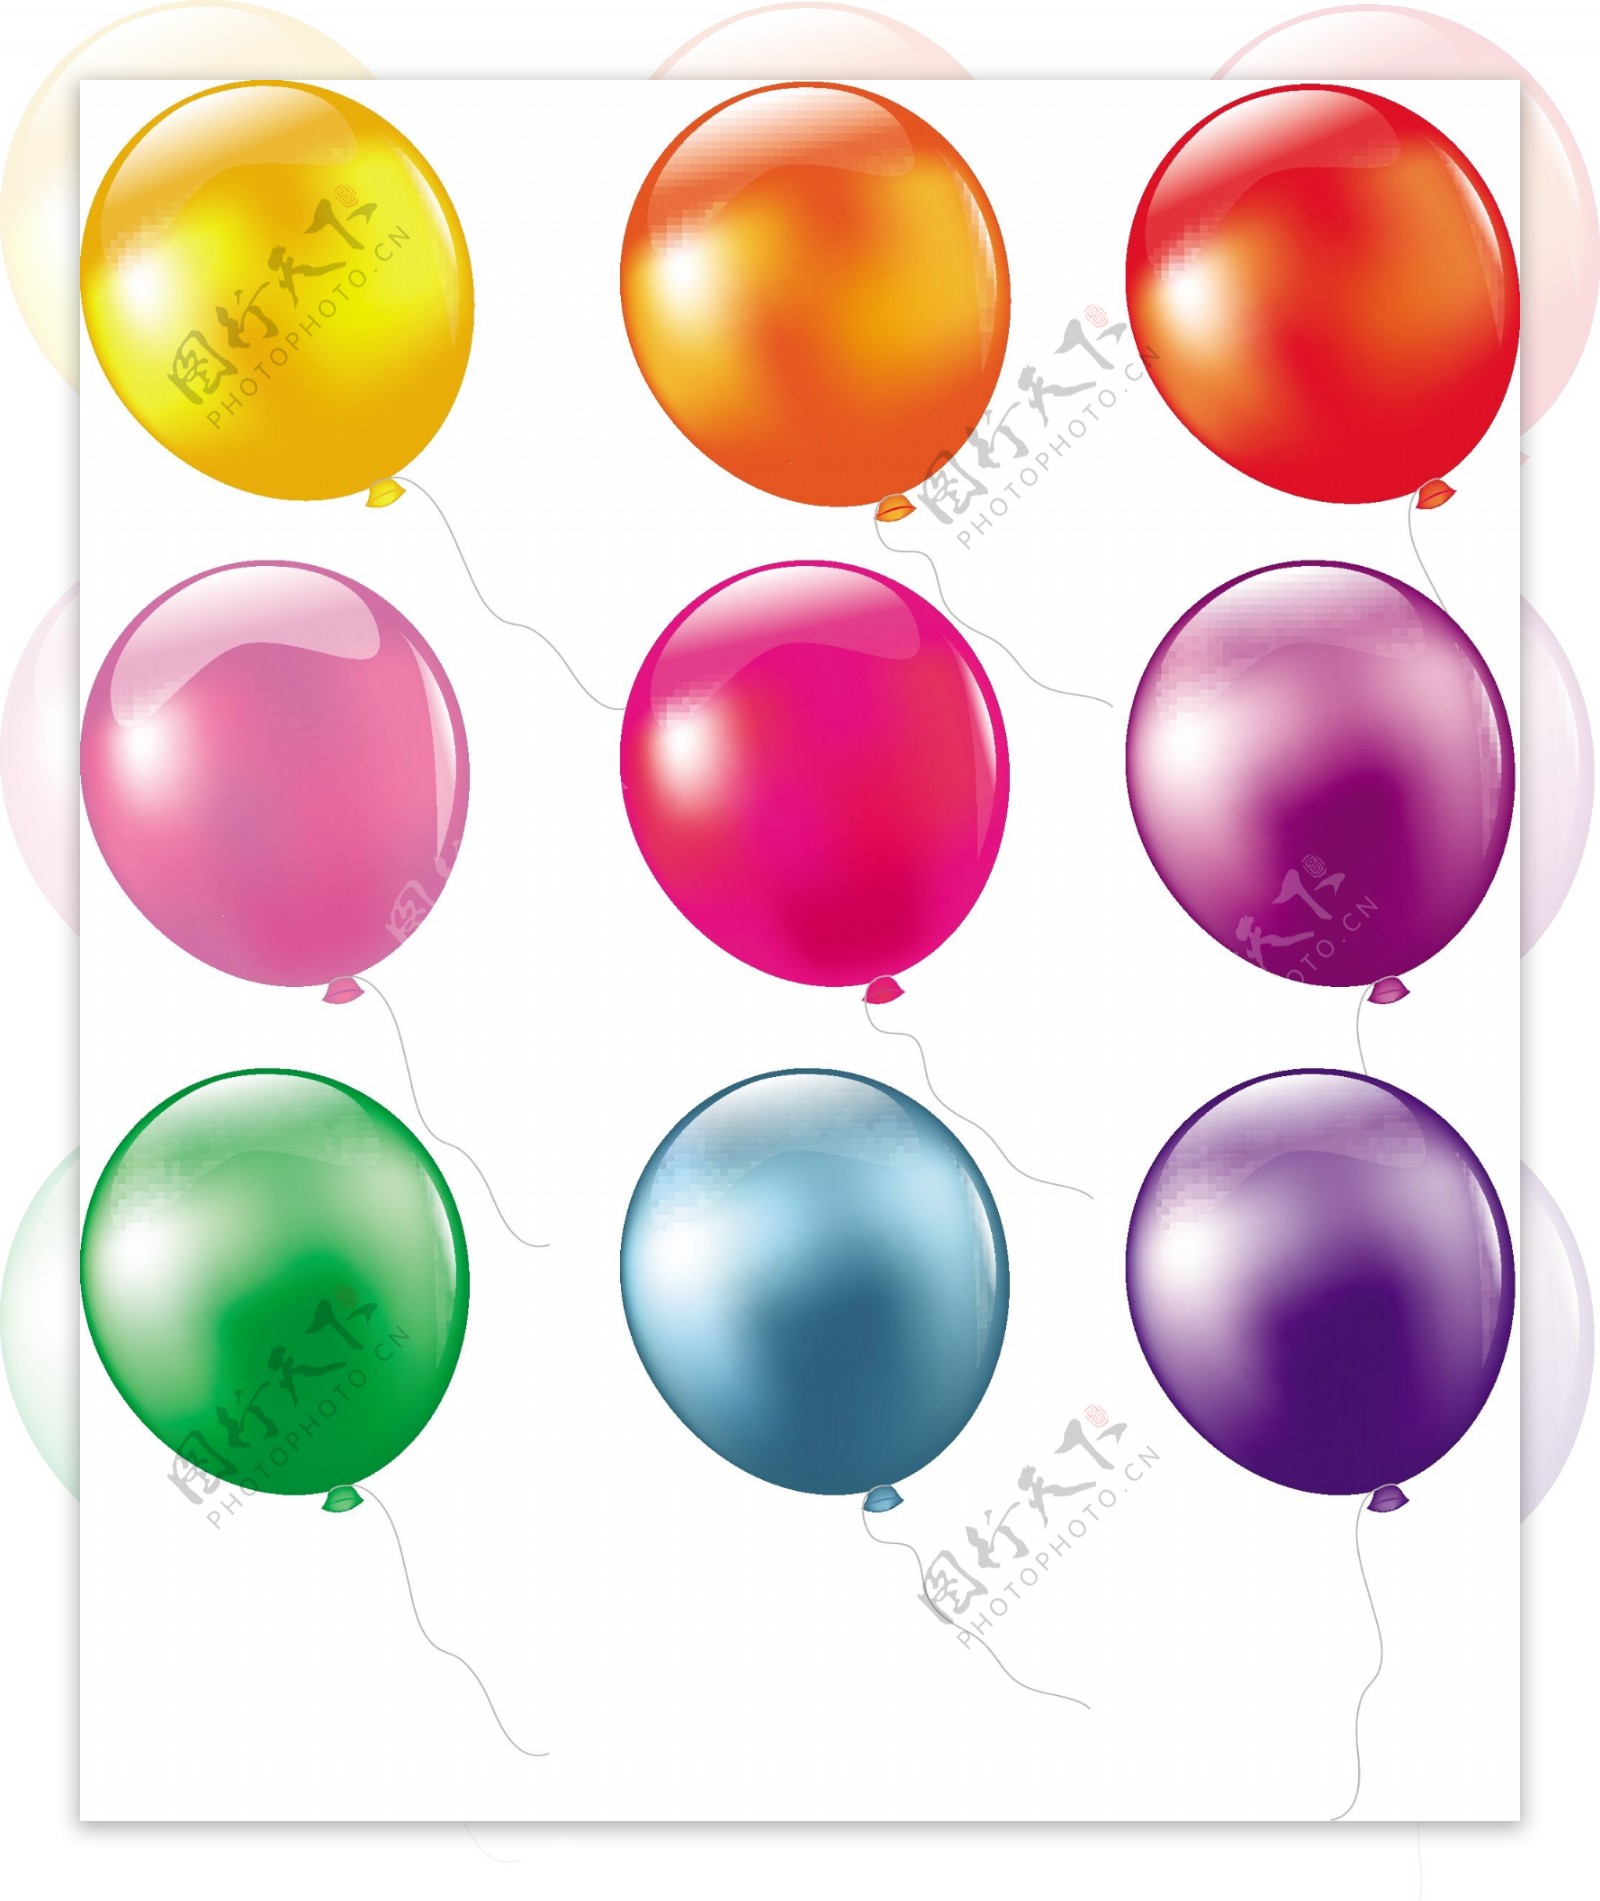 精美彩色气球矢量素材